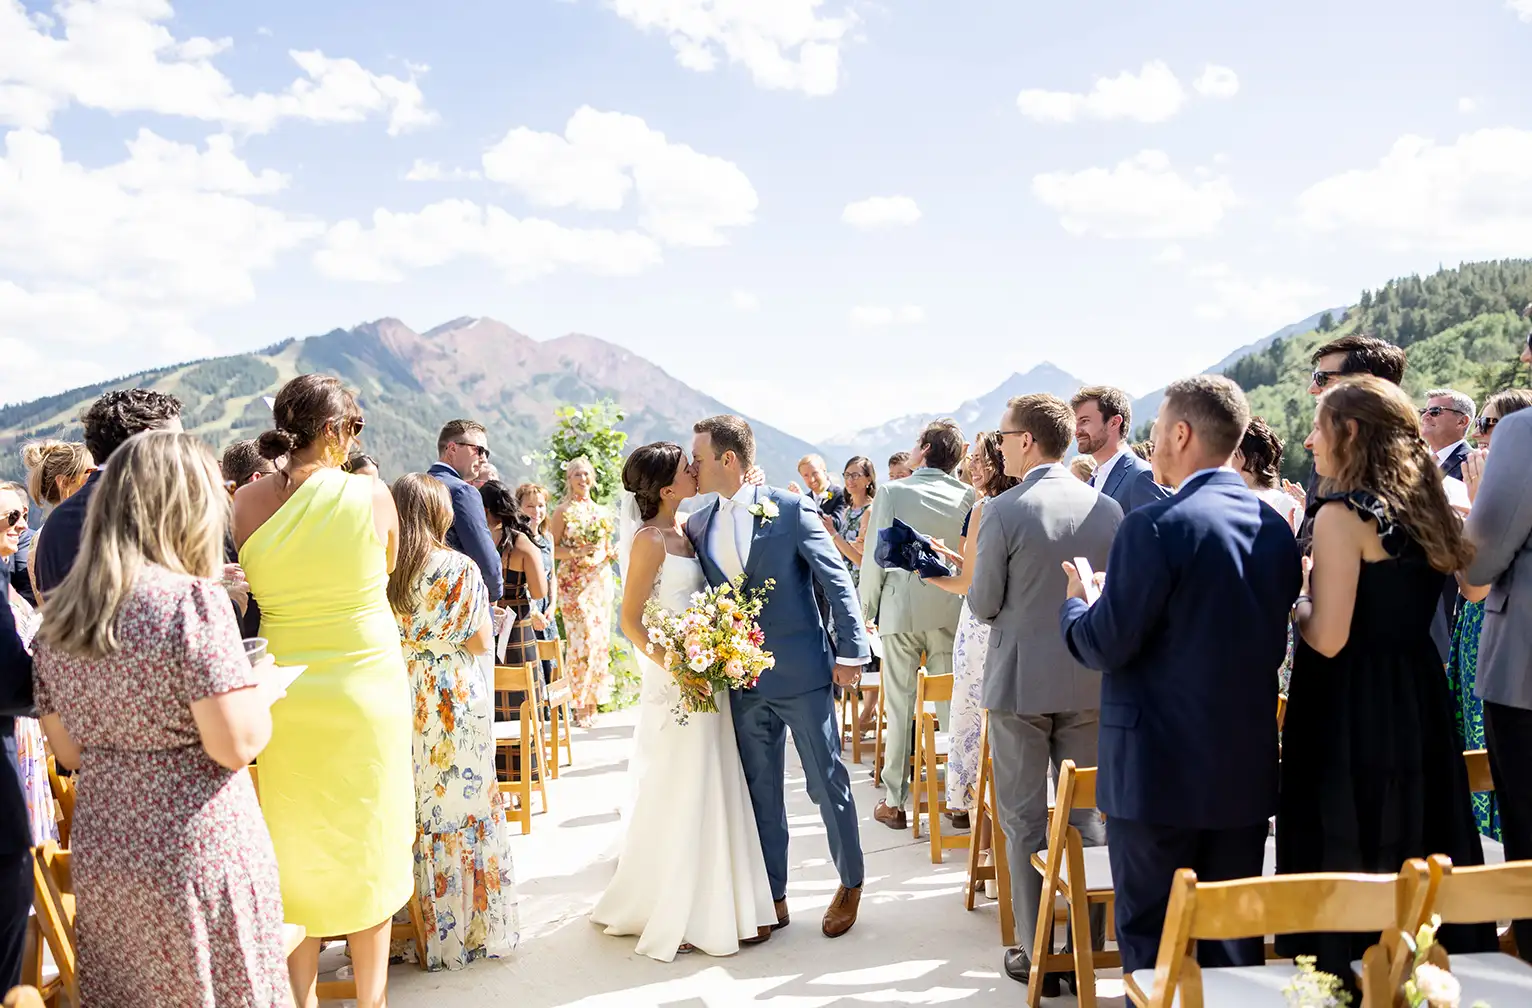 Weddings at Buttermilk at Aspen Snowmass